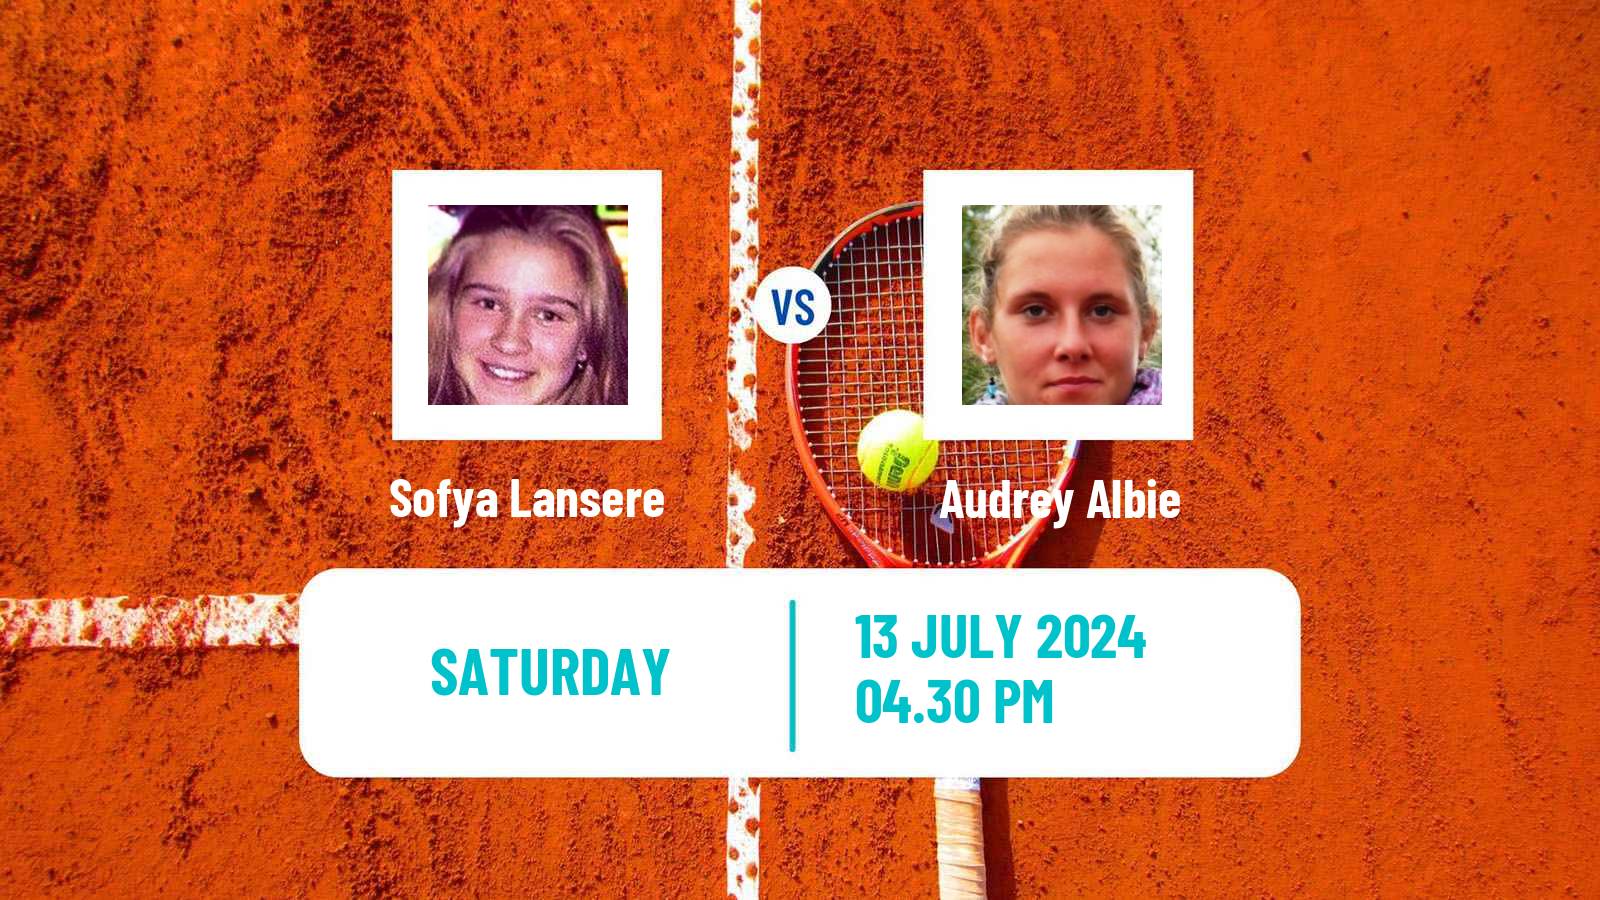 Tennis WTA Palermo Sofya Lansere - Audrey Albie